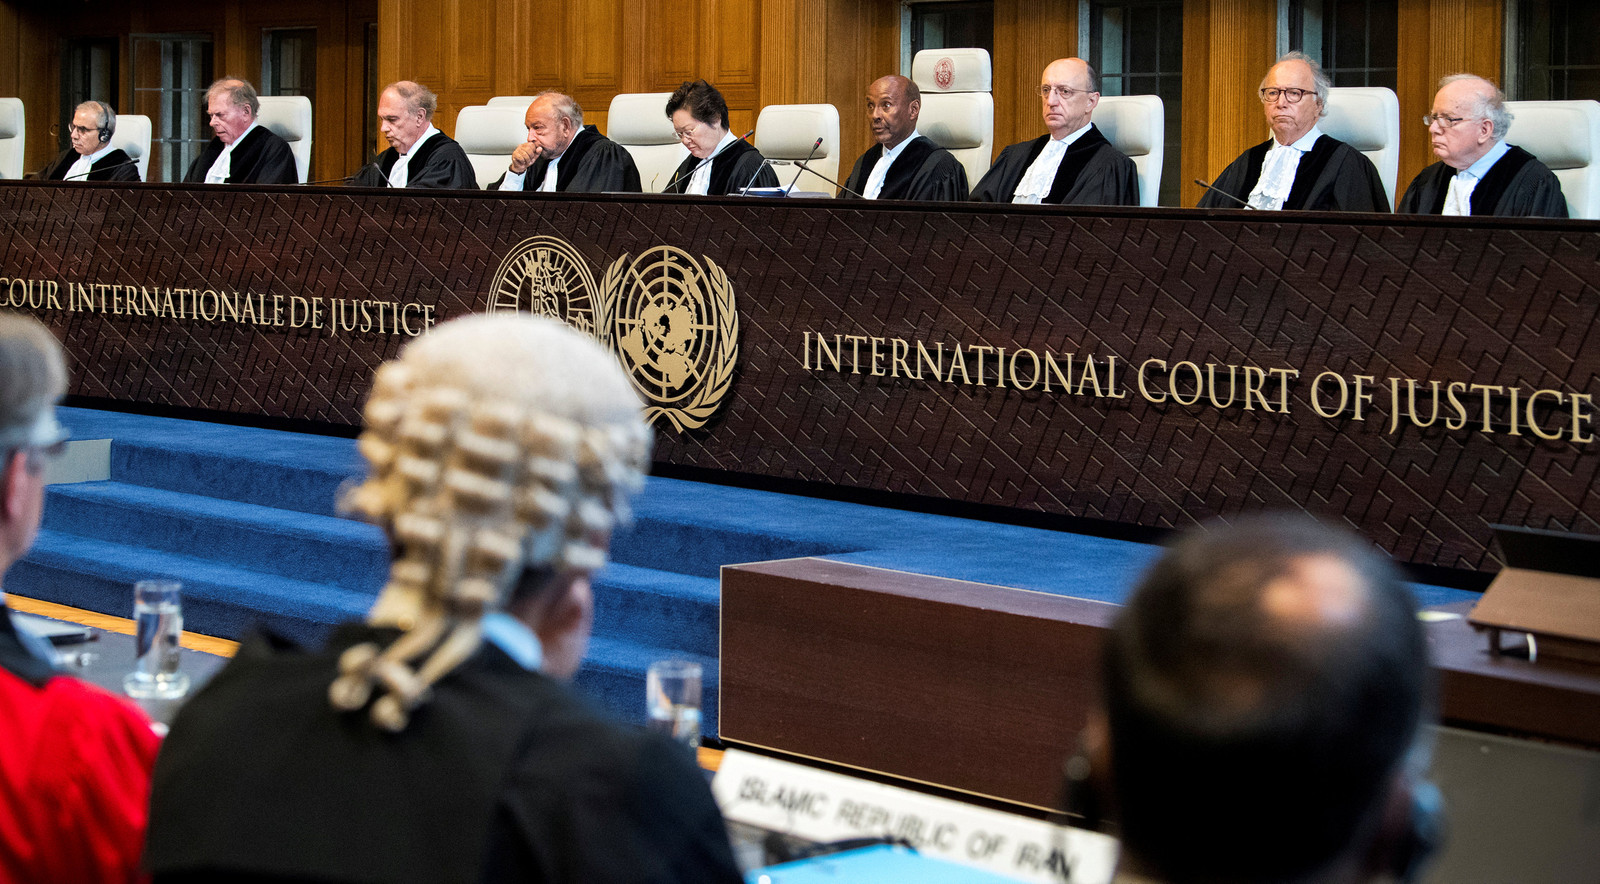 La Russie refuse de comparaître devant la Cour internationale de